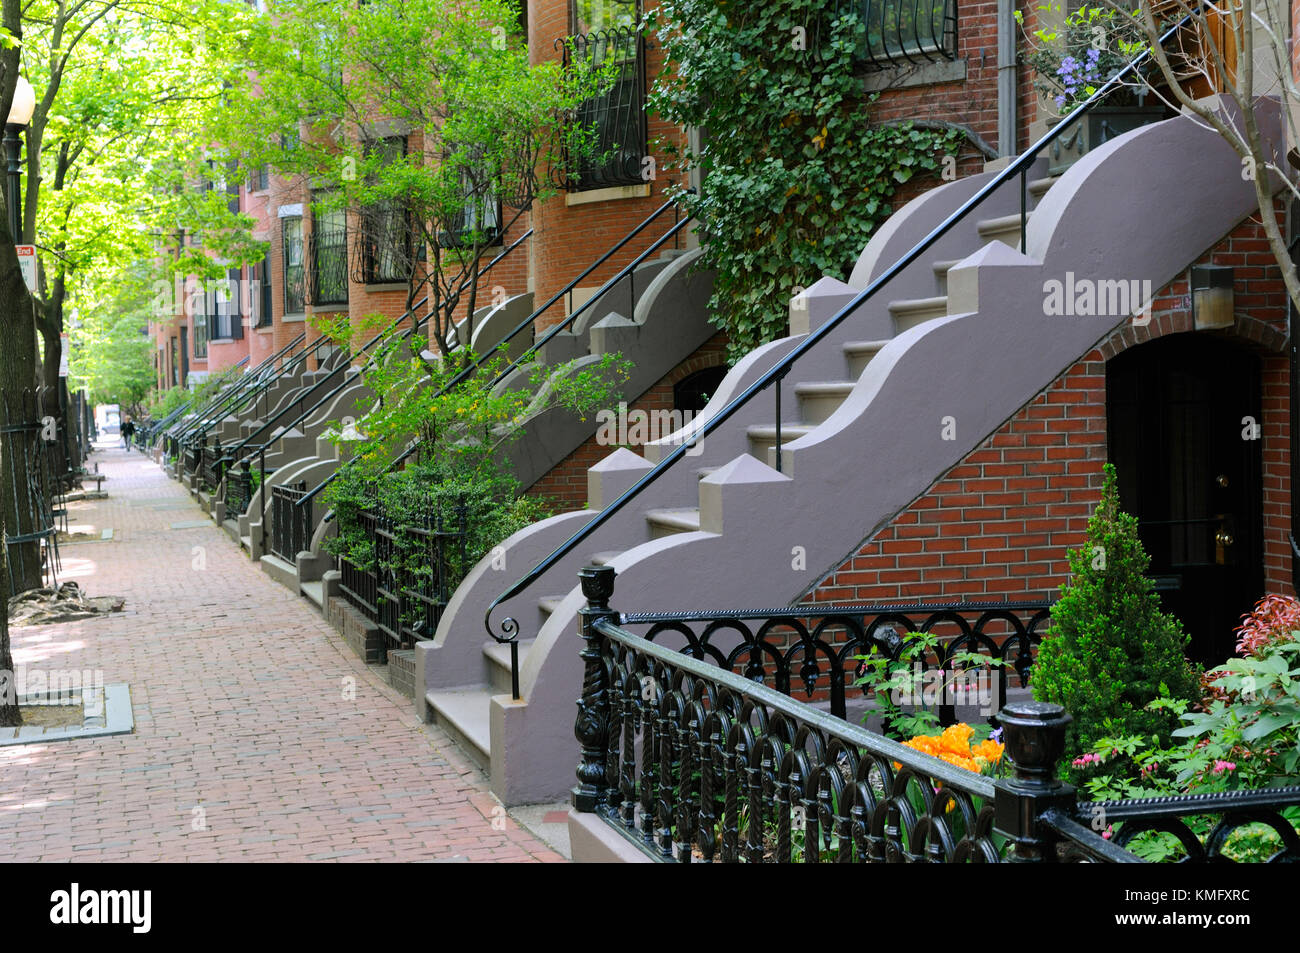 Elegante Einstieg von Boston south end Reihenhäuser. Backsteingebäude und Bürgersteig, Bügeleisen Zäune und Geländer und wellig Stein Verkleidung auf der Treppe Seitenwänden. Stockfoto